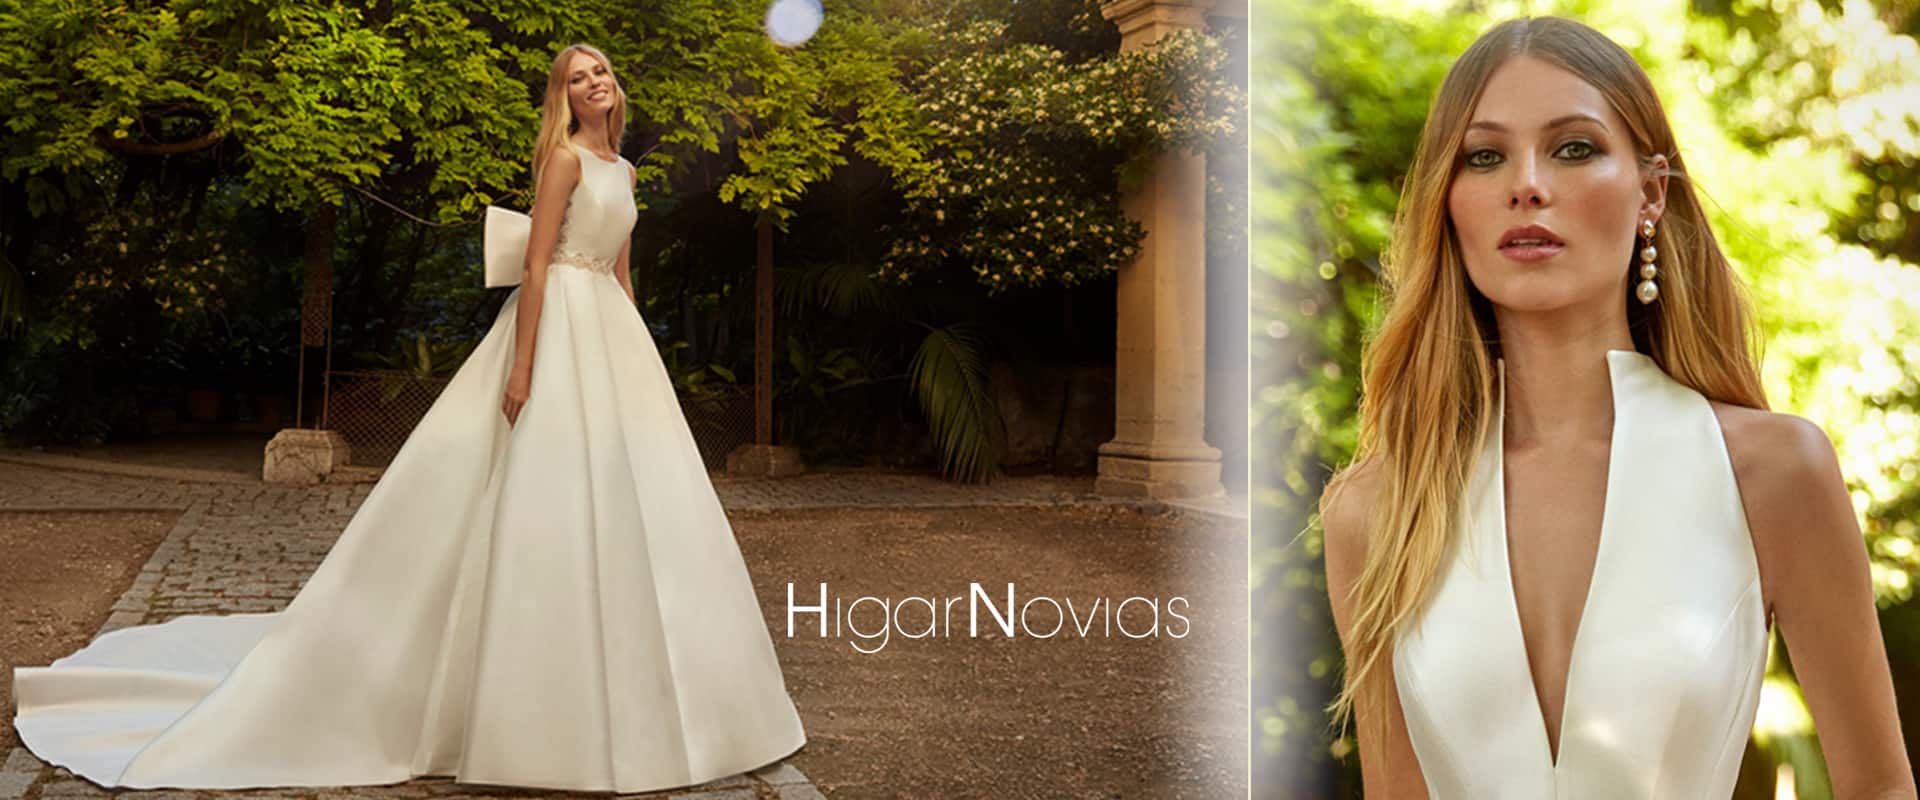 Higar Novias spanyol menyasszonyi ruha kollekció főoldali bannere